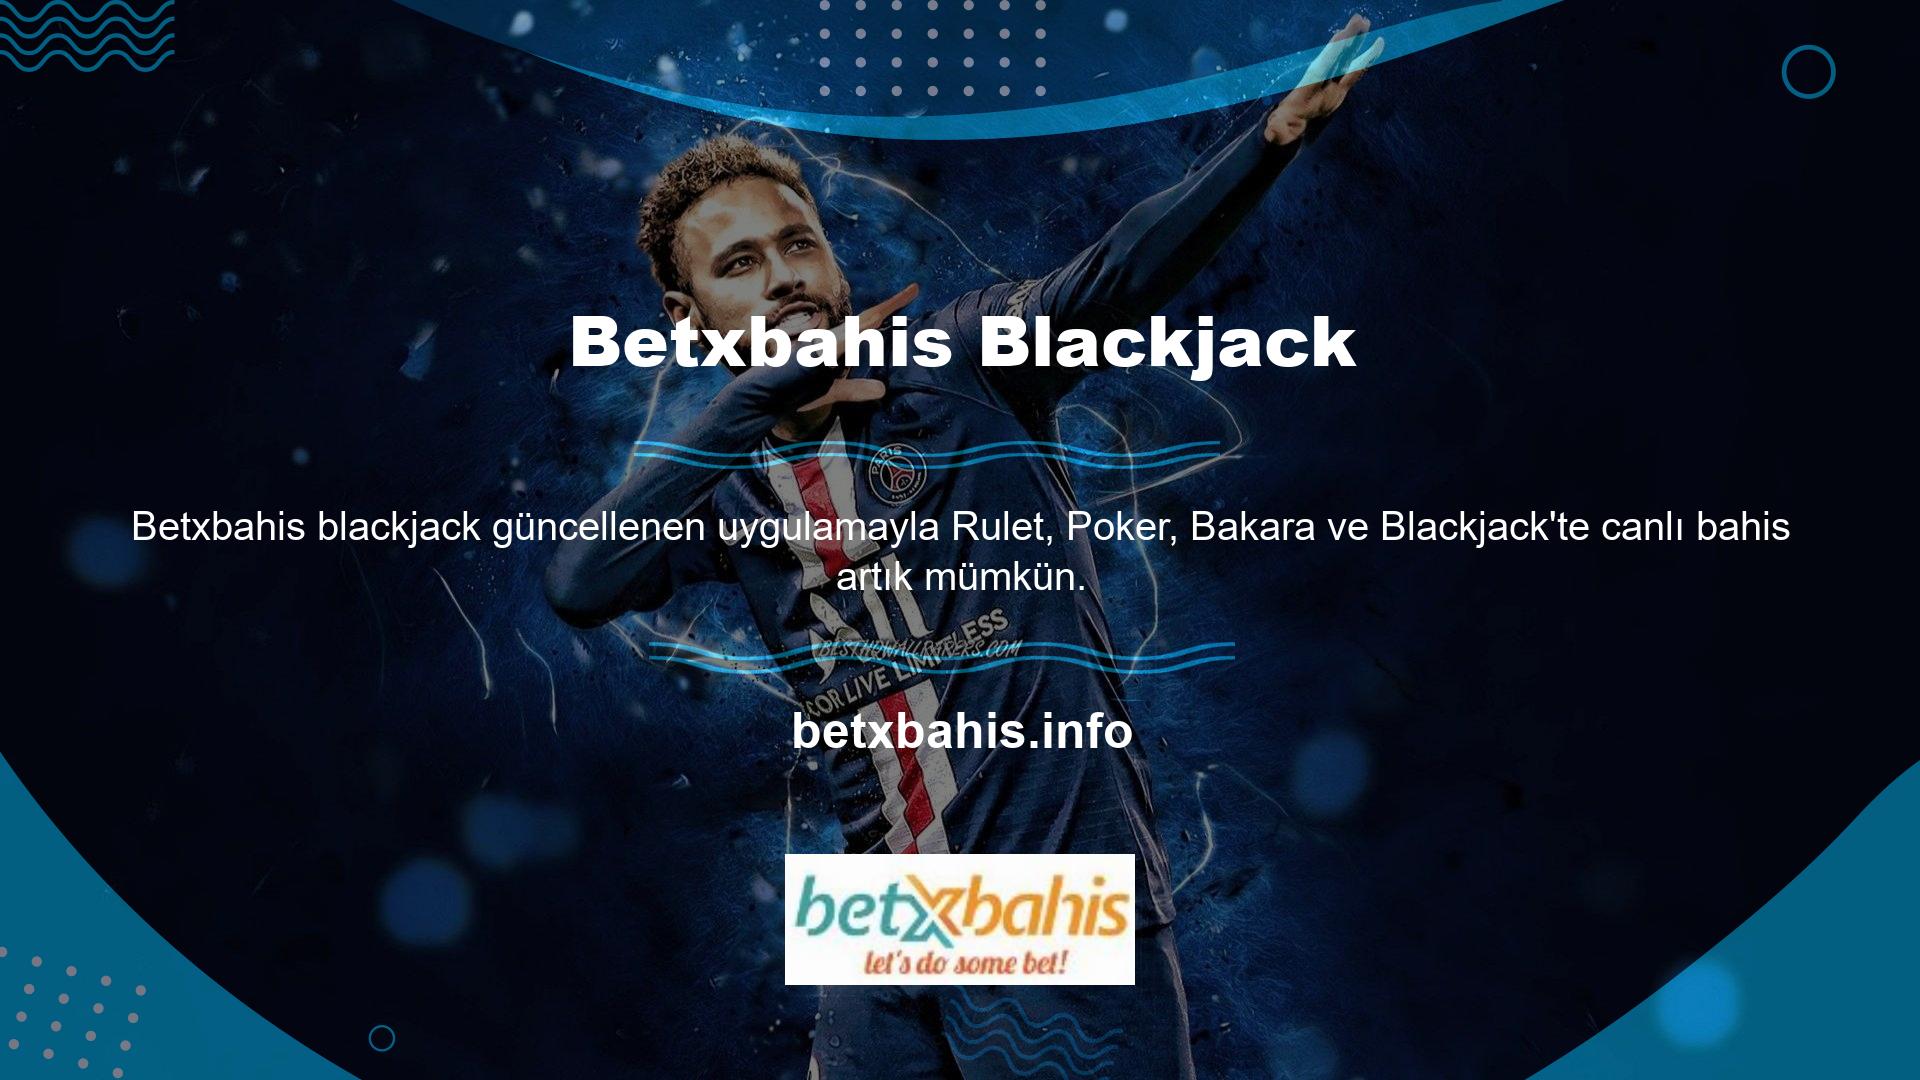 Betxbahis Blackjack Çevrimdışı casinonun şart ve koşulları aşağıdaki gibidir: Türkiye yalnızca Blackjack, Poker, Bakara, Rulet, Betxbahis Blackjack Çevrimiçi Casino Şartlar ve Koşulları, Video Slotlar, Klasik Slotton veya Jackpot Bahisleri sunmaktadır